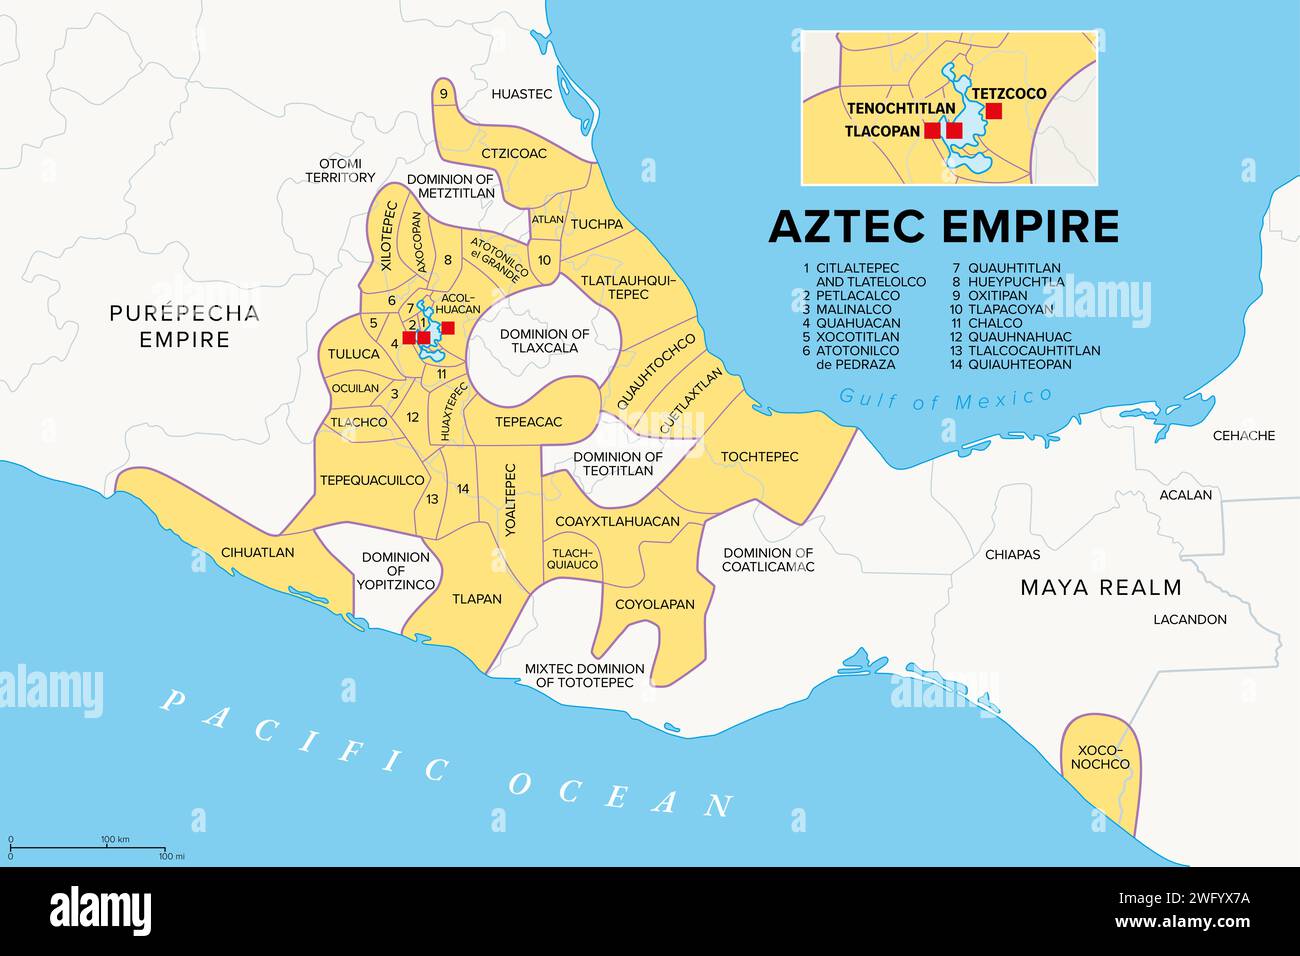 Empire aztèque avec provinces tributaires, carte historique. Étendue maximale de la Triple Alliance Tenochtitlan, Tetzcoco et Tlacopan au moment de la conquête espagnole Banque D'Images